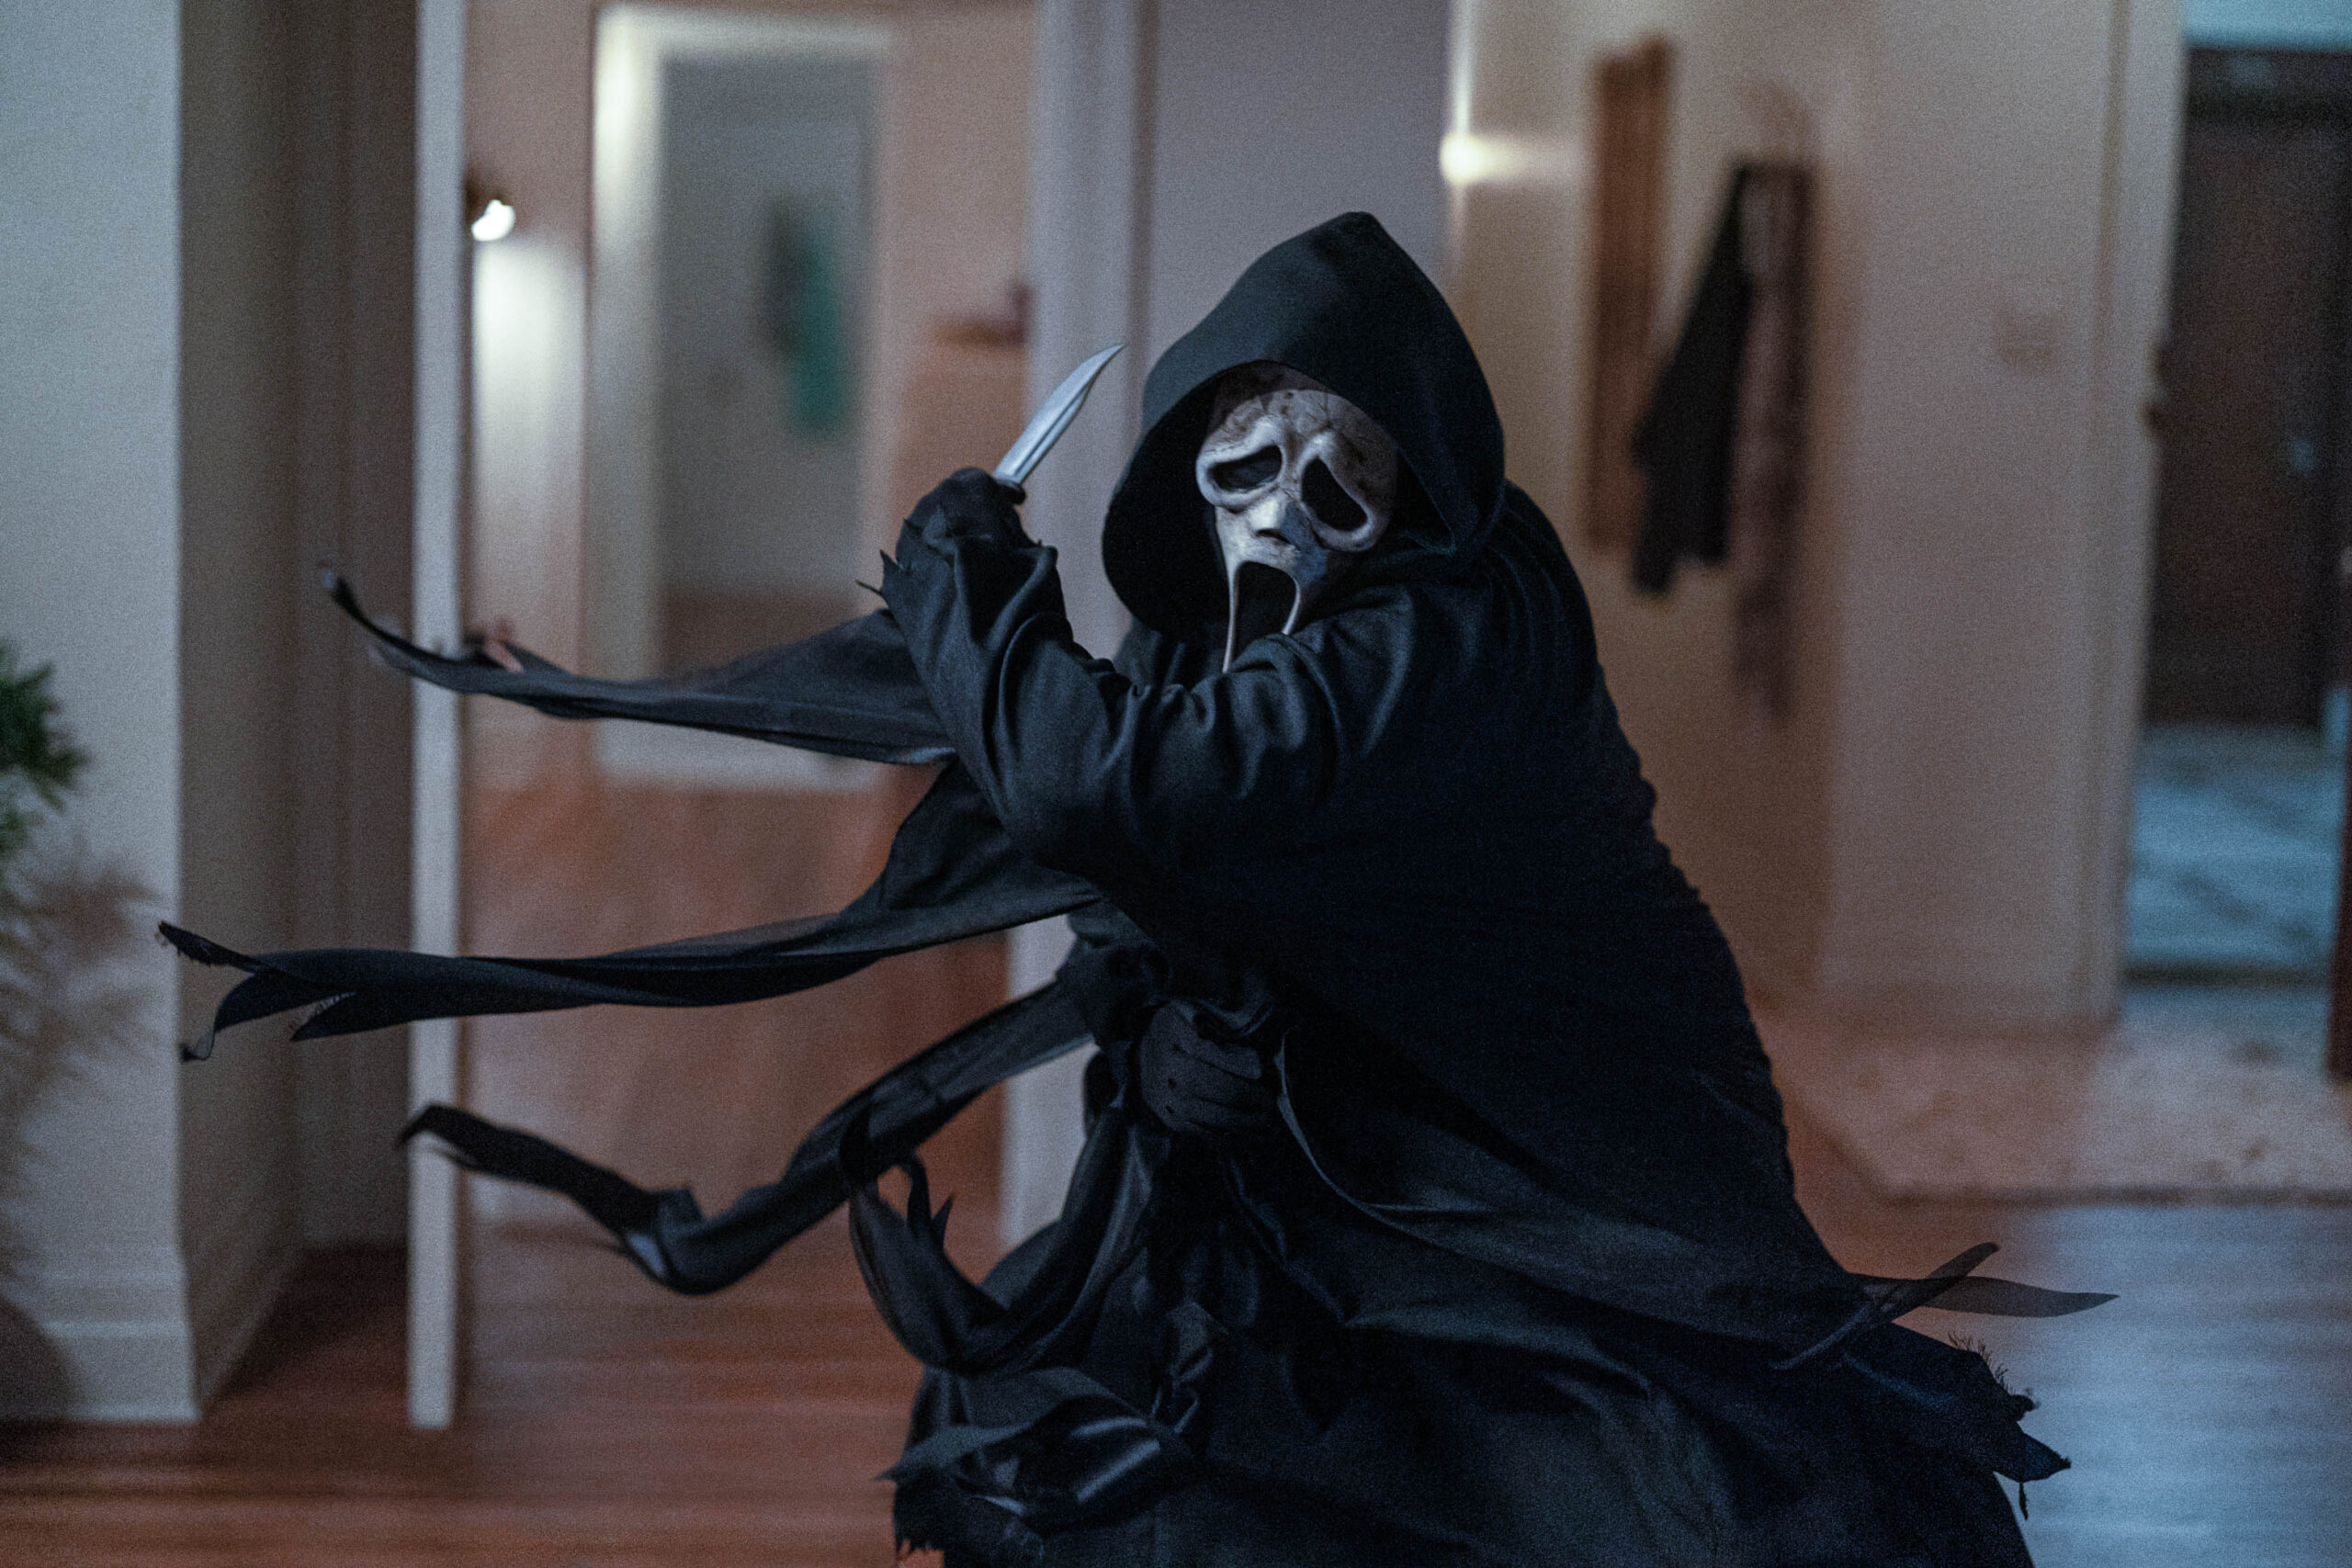 A scene from the movie "Scream VI."